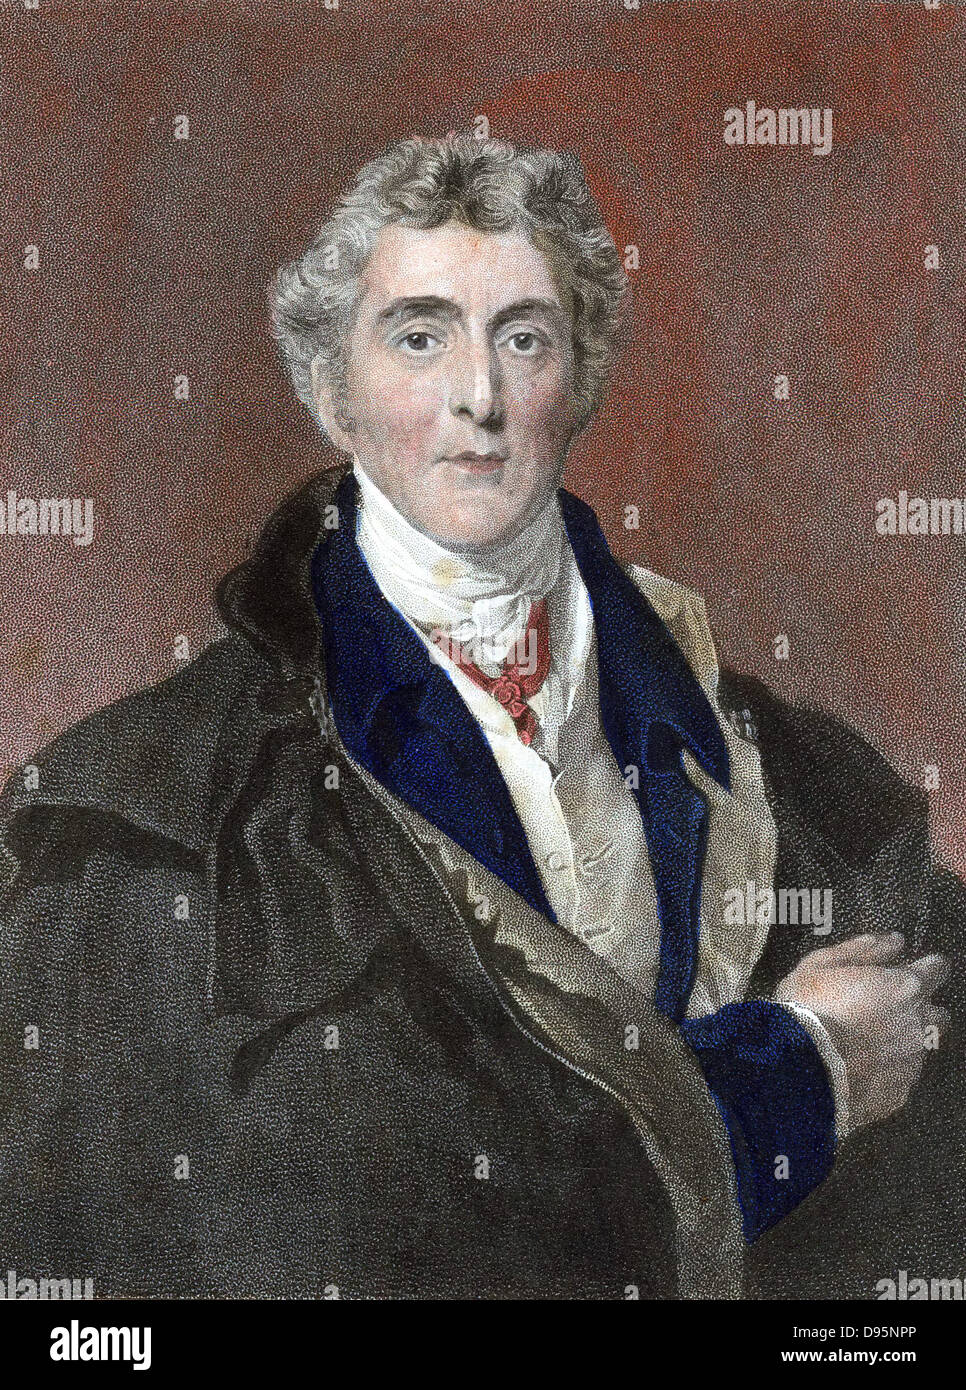 Arthur Wellesley, 1er duc de Wellington (1769-1852) soldat britannique et homme d'État. Vaincu Napoléon à Waterloo. Après gravure coloriée au portrait par Thomas Lawrence. Banque D'Images